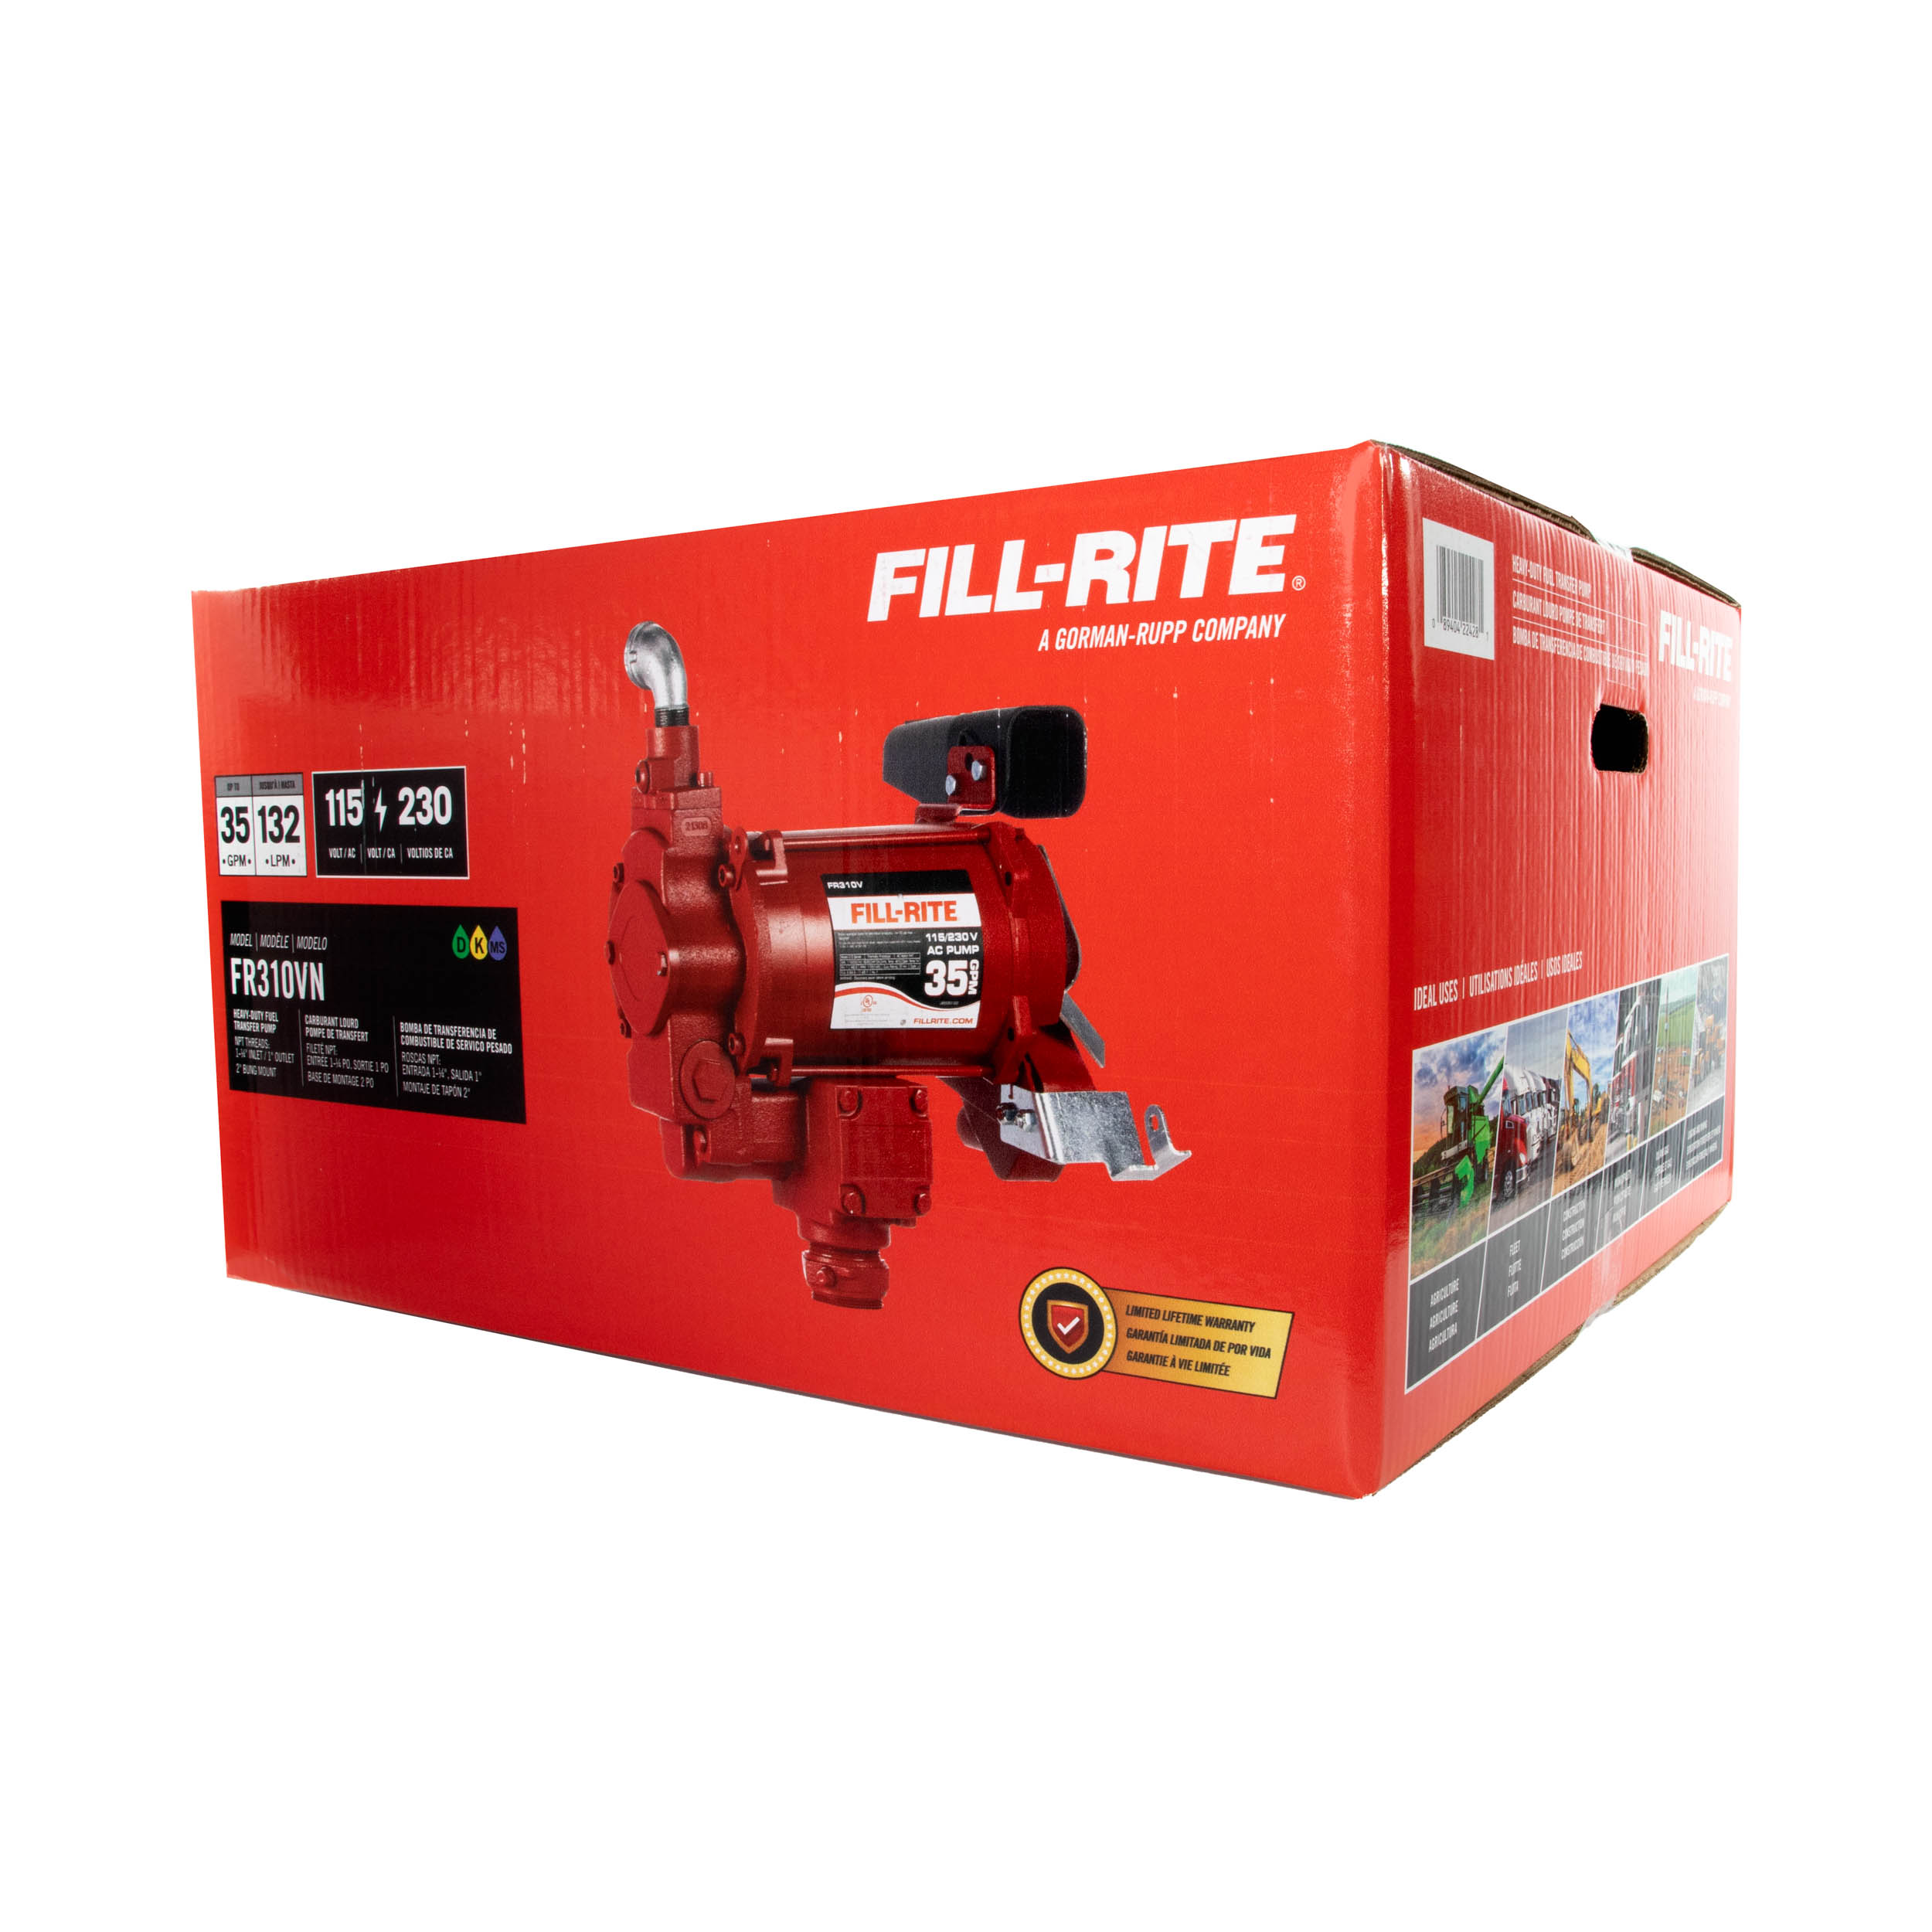 Fill-Rite-FR310VN-115V-230V-fuel-transfer-pump-in-packaging